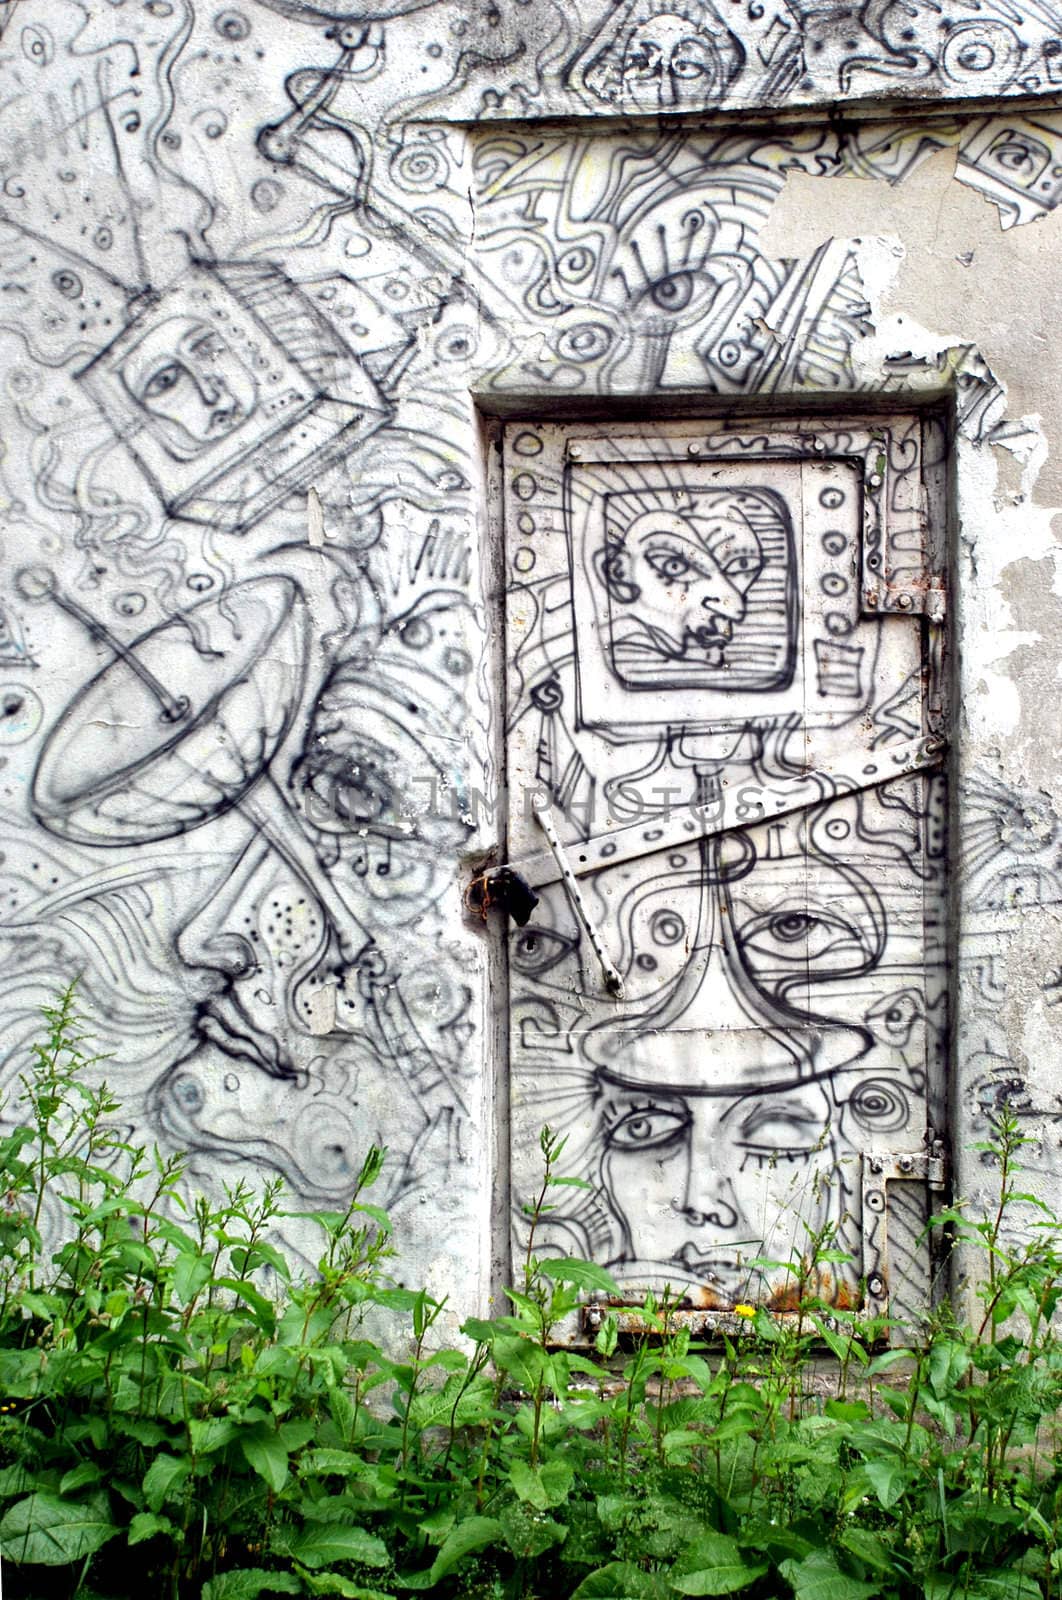 Doors and wall drawn of original rhythmic graffiti